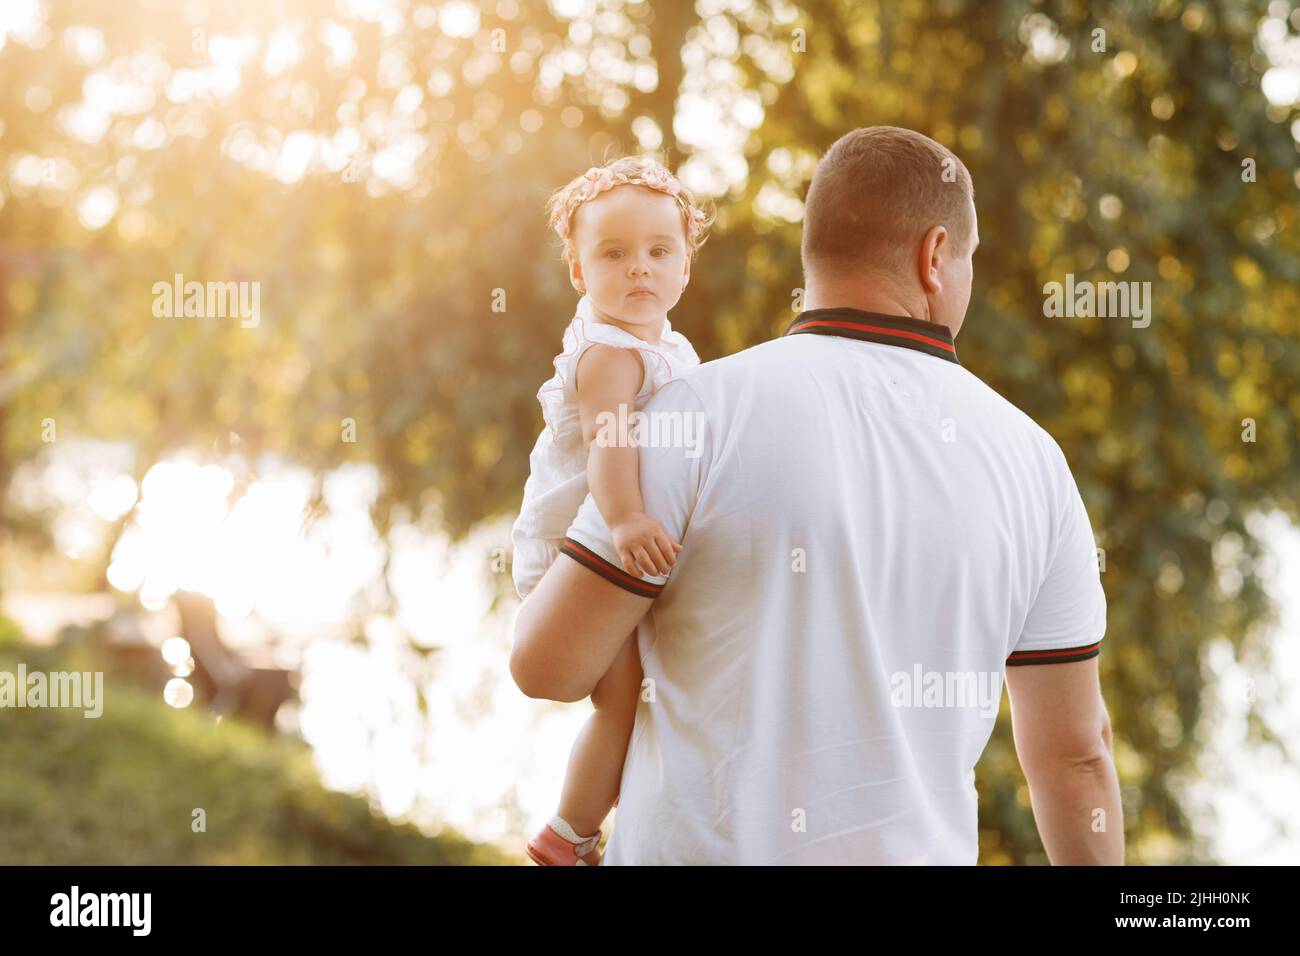 fête des pères. Un père souriant embrasse sa petite fille dans le parc vert. Le concept de vacances d'été. Famille passant du temps ensemble sur natur Banque D'Images